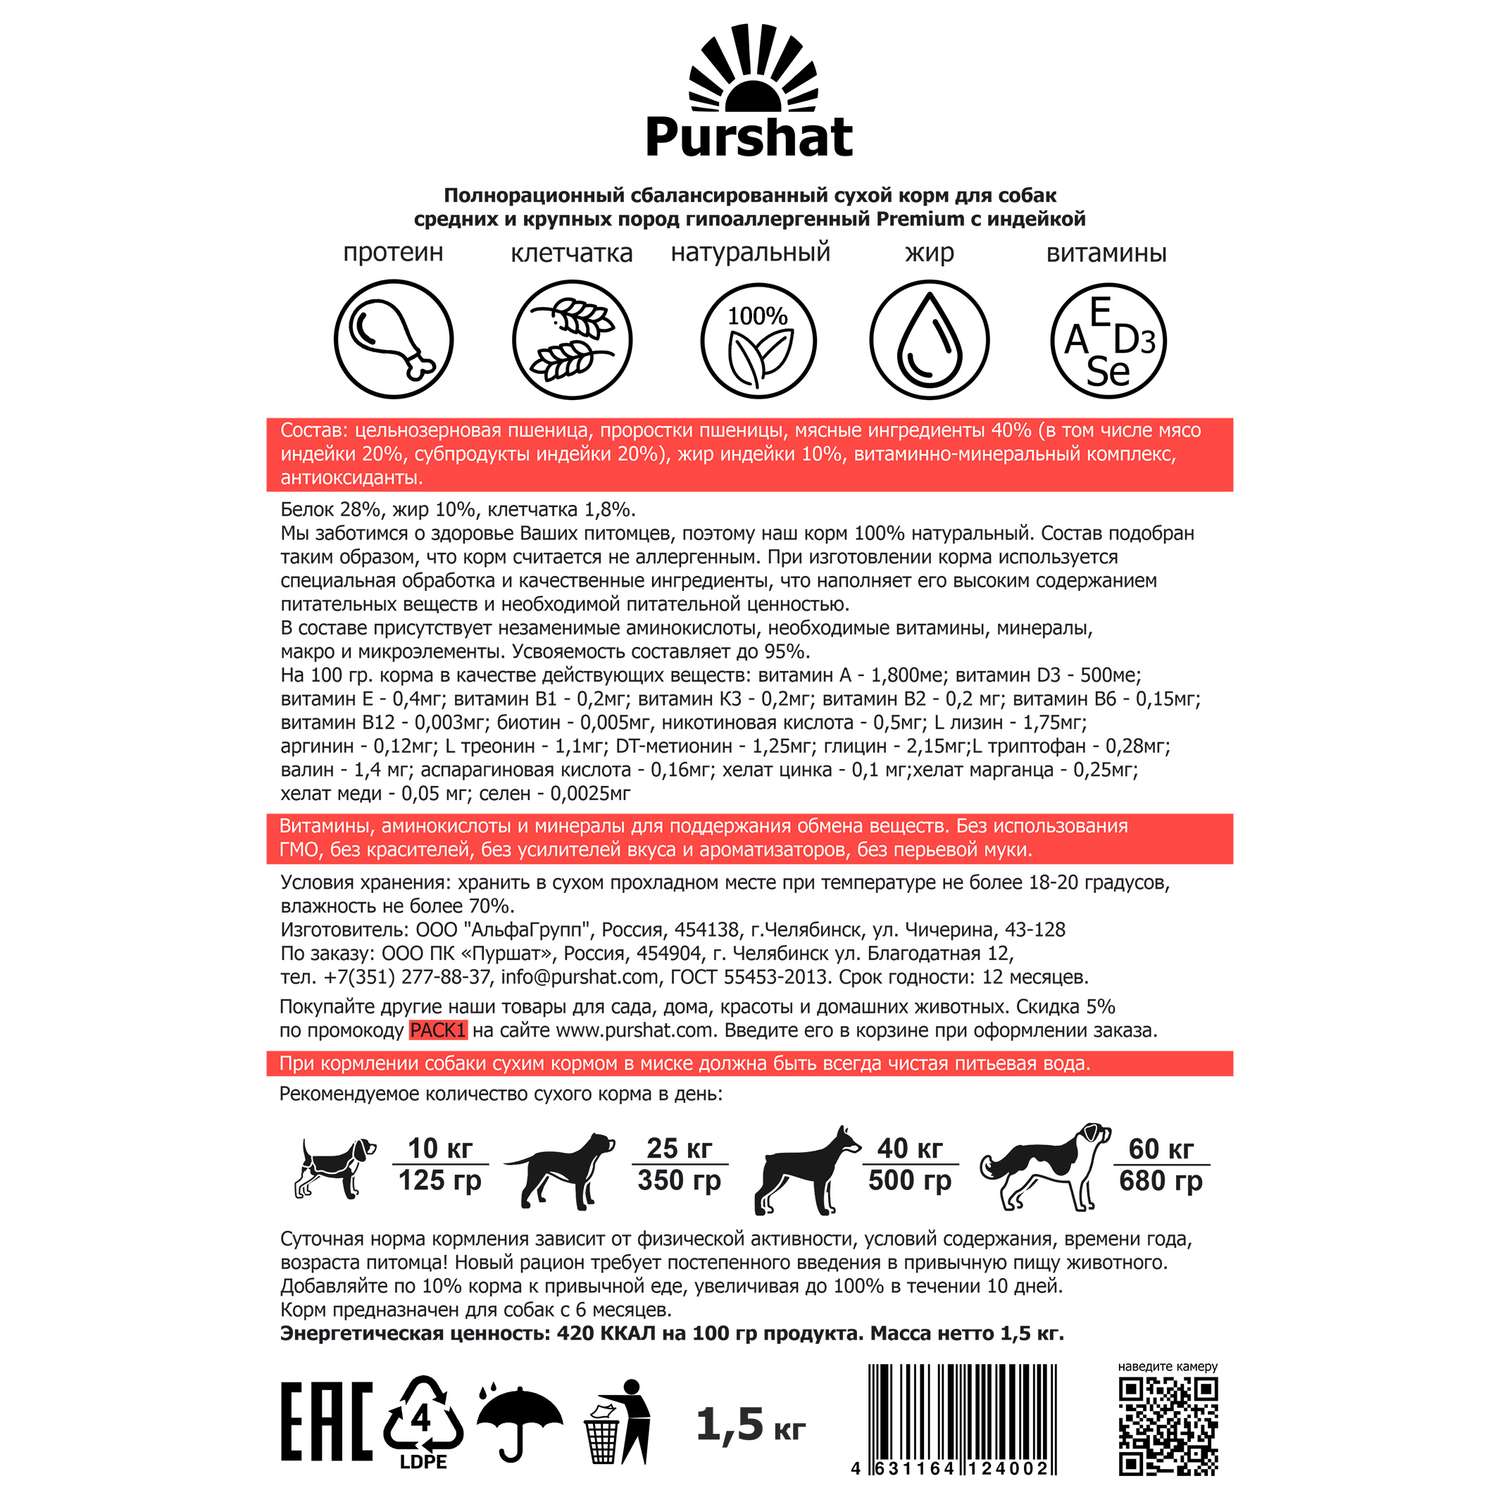 Корм для собак Purshat для средних и крупных пород гипоаллергенный с индейкой 1500 грамм - фото 9